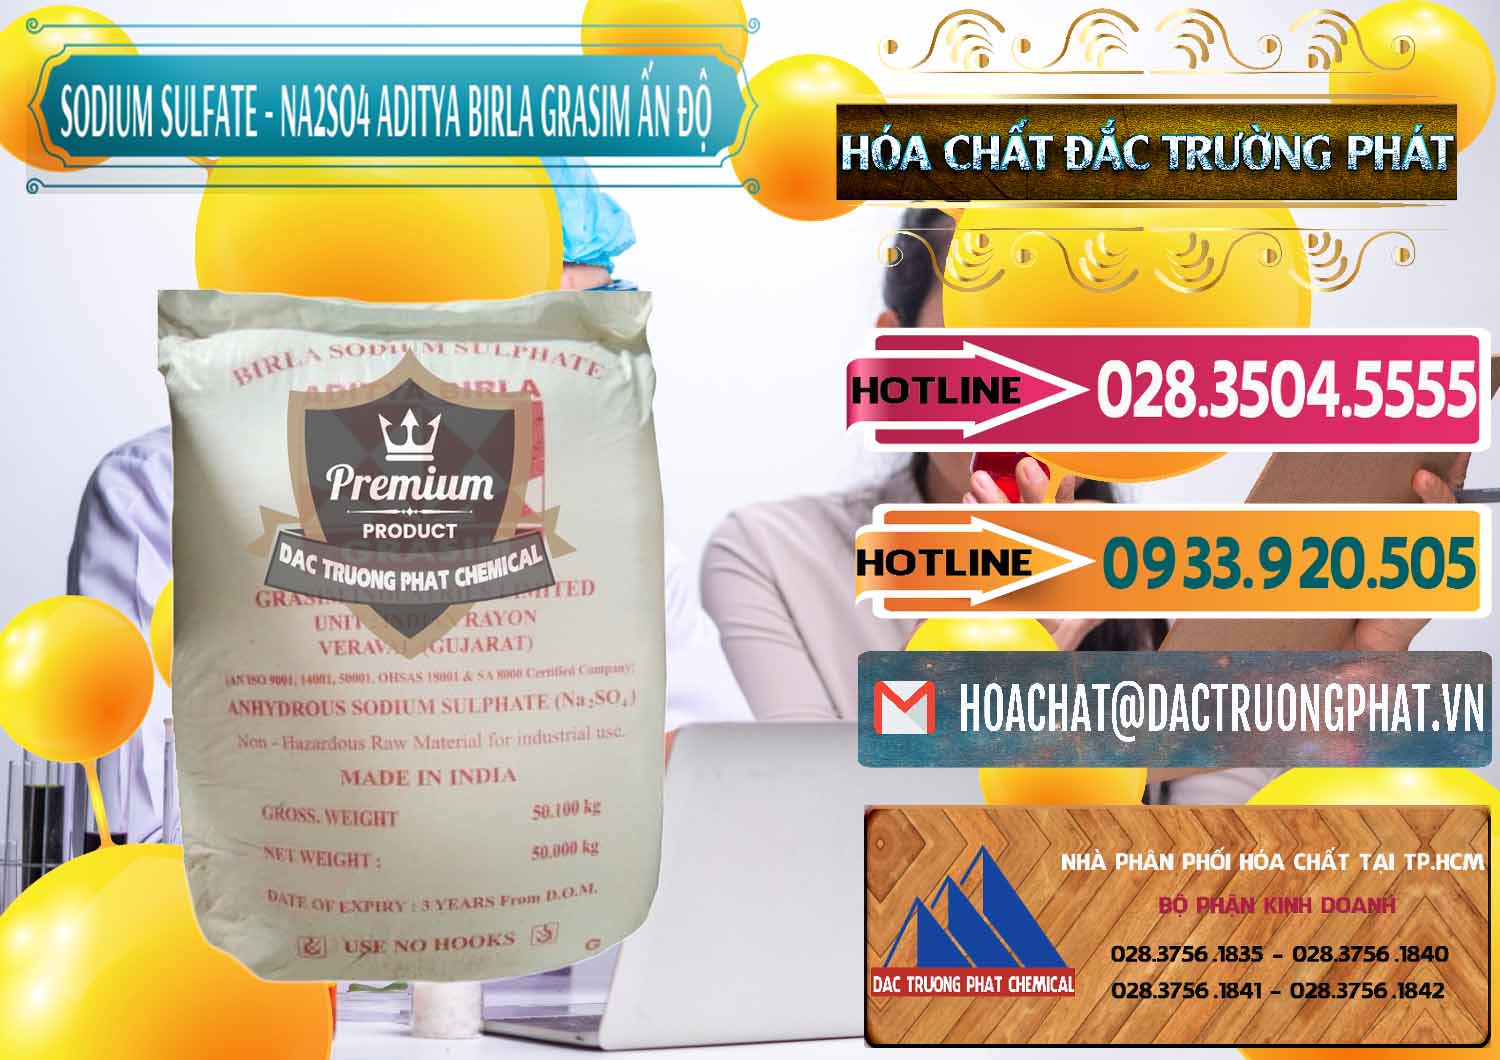 Chuyên kinh doanh ( bán ) Sodium Sulphate - Muối Sunfat Na2SO4 Grasim Ấn Độ India - 0356 - Chuyên kinh doanh và phân phối hóa chất tại TP.HCM - dactruongphat.vn